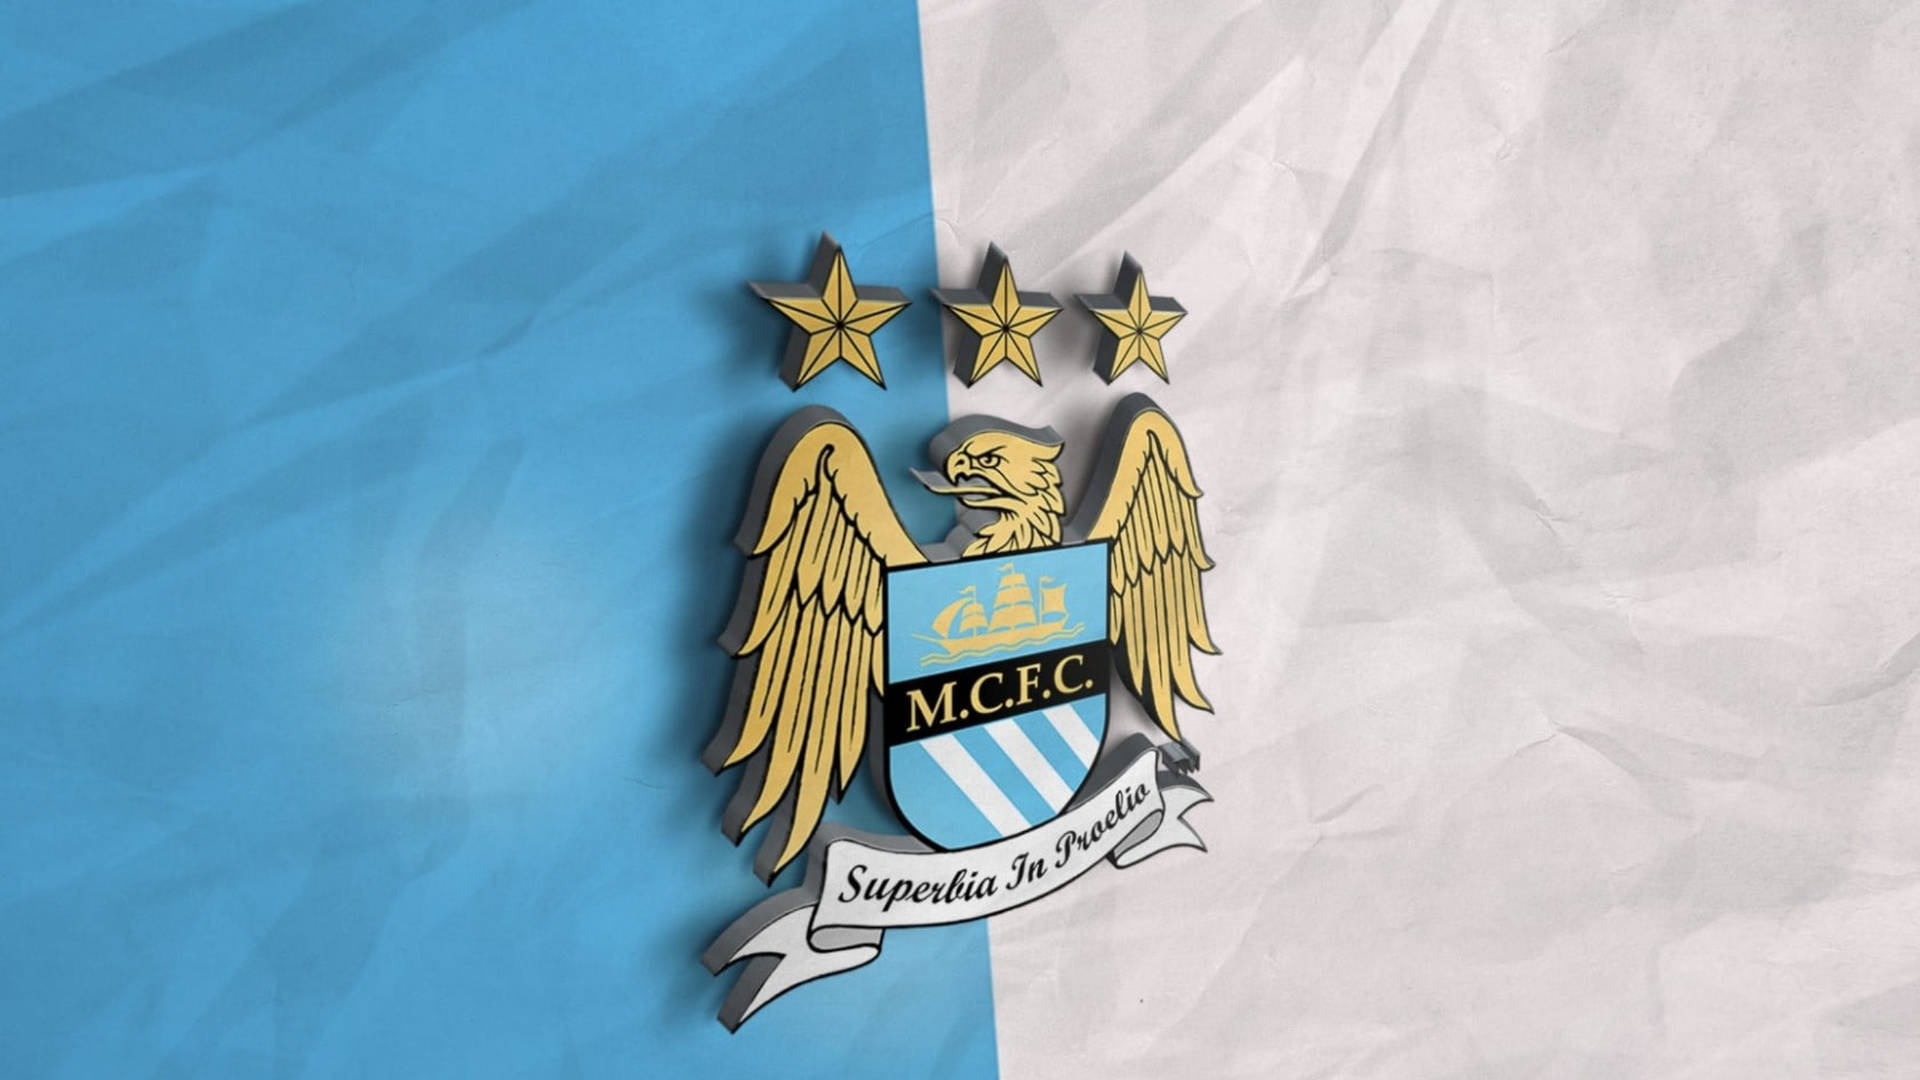 Manchester City Emblem With Premier League Recognition Background